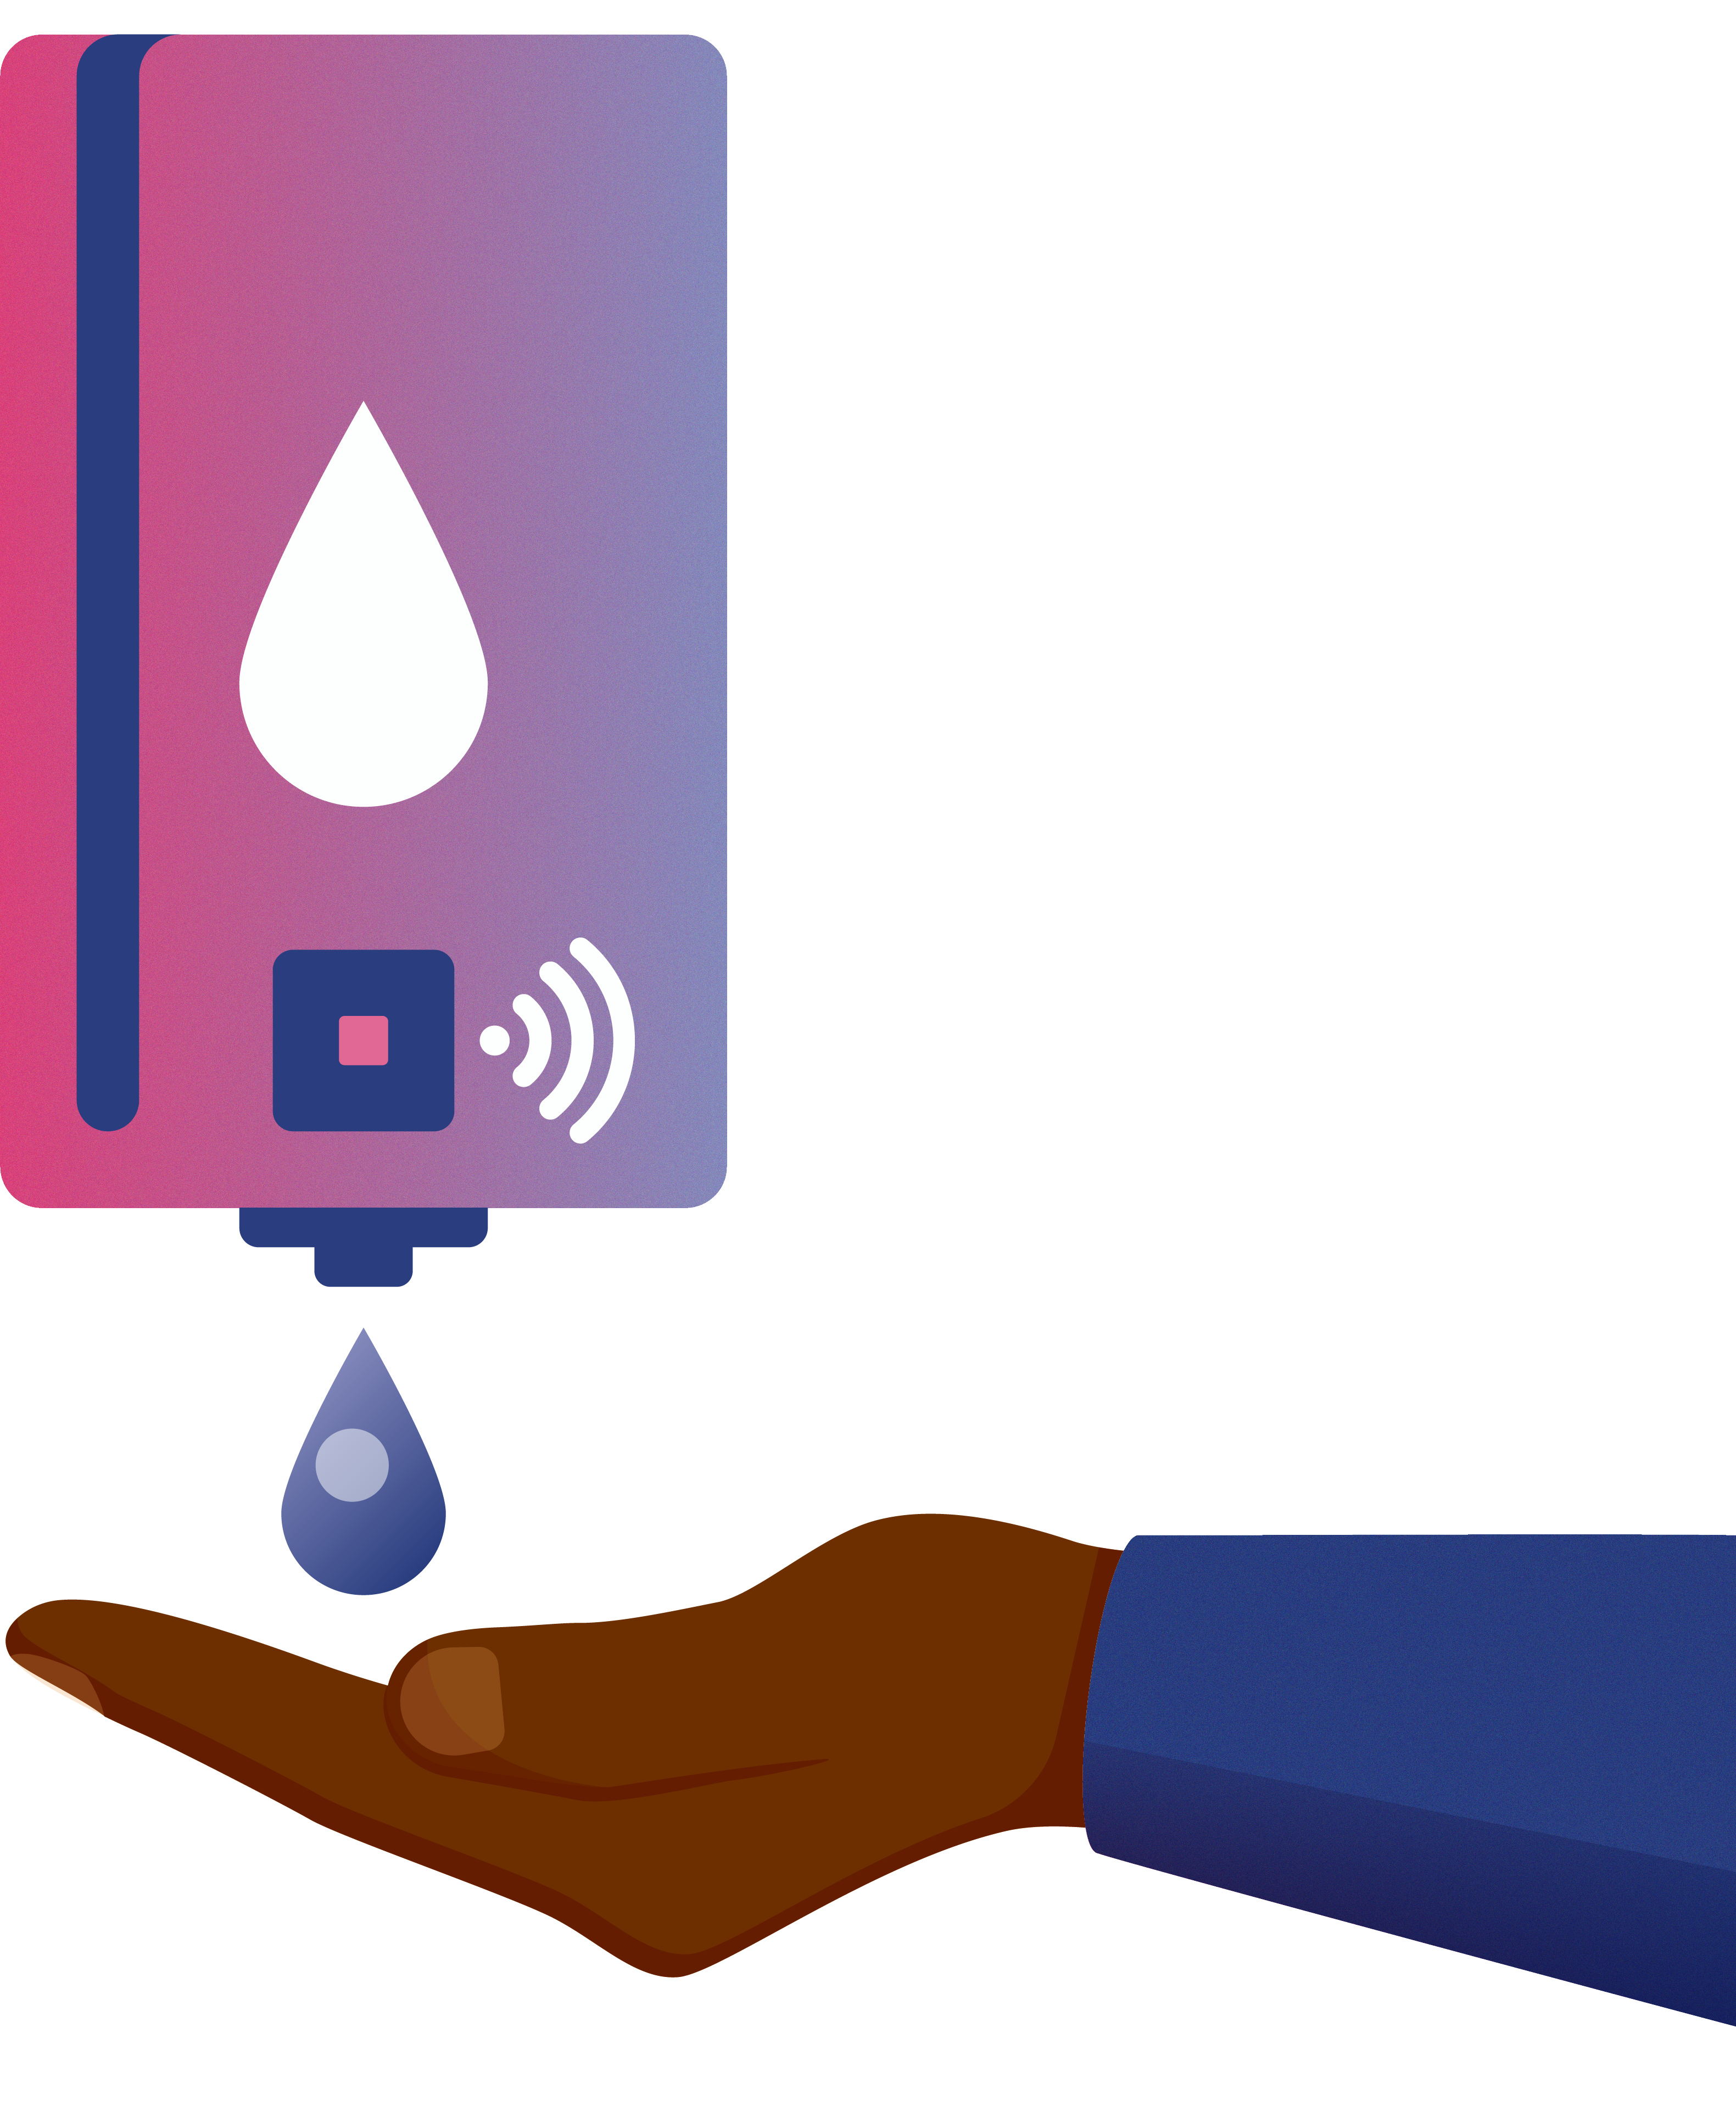 Illustration of a hand under a hand sanitizer dispenser